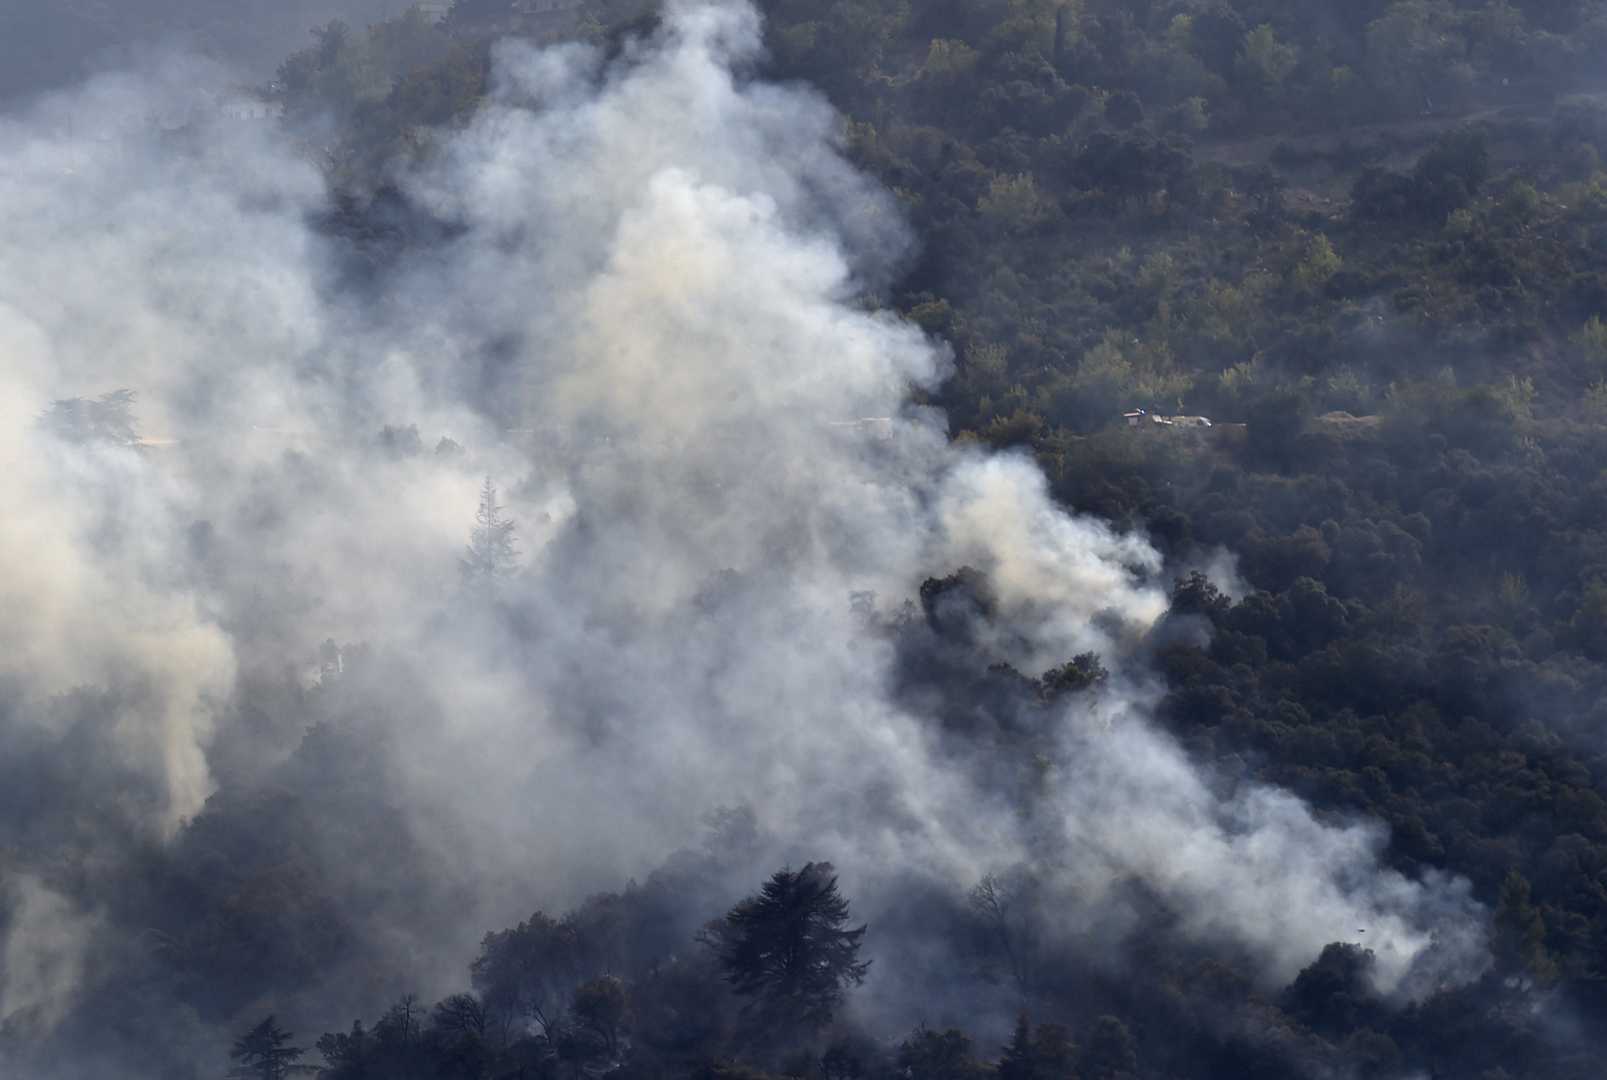 الجزائر.. توقيف الشخص المتسبب في الحرائق بغابات ولاية بجاية